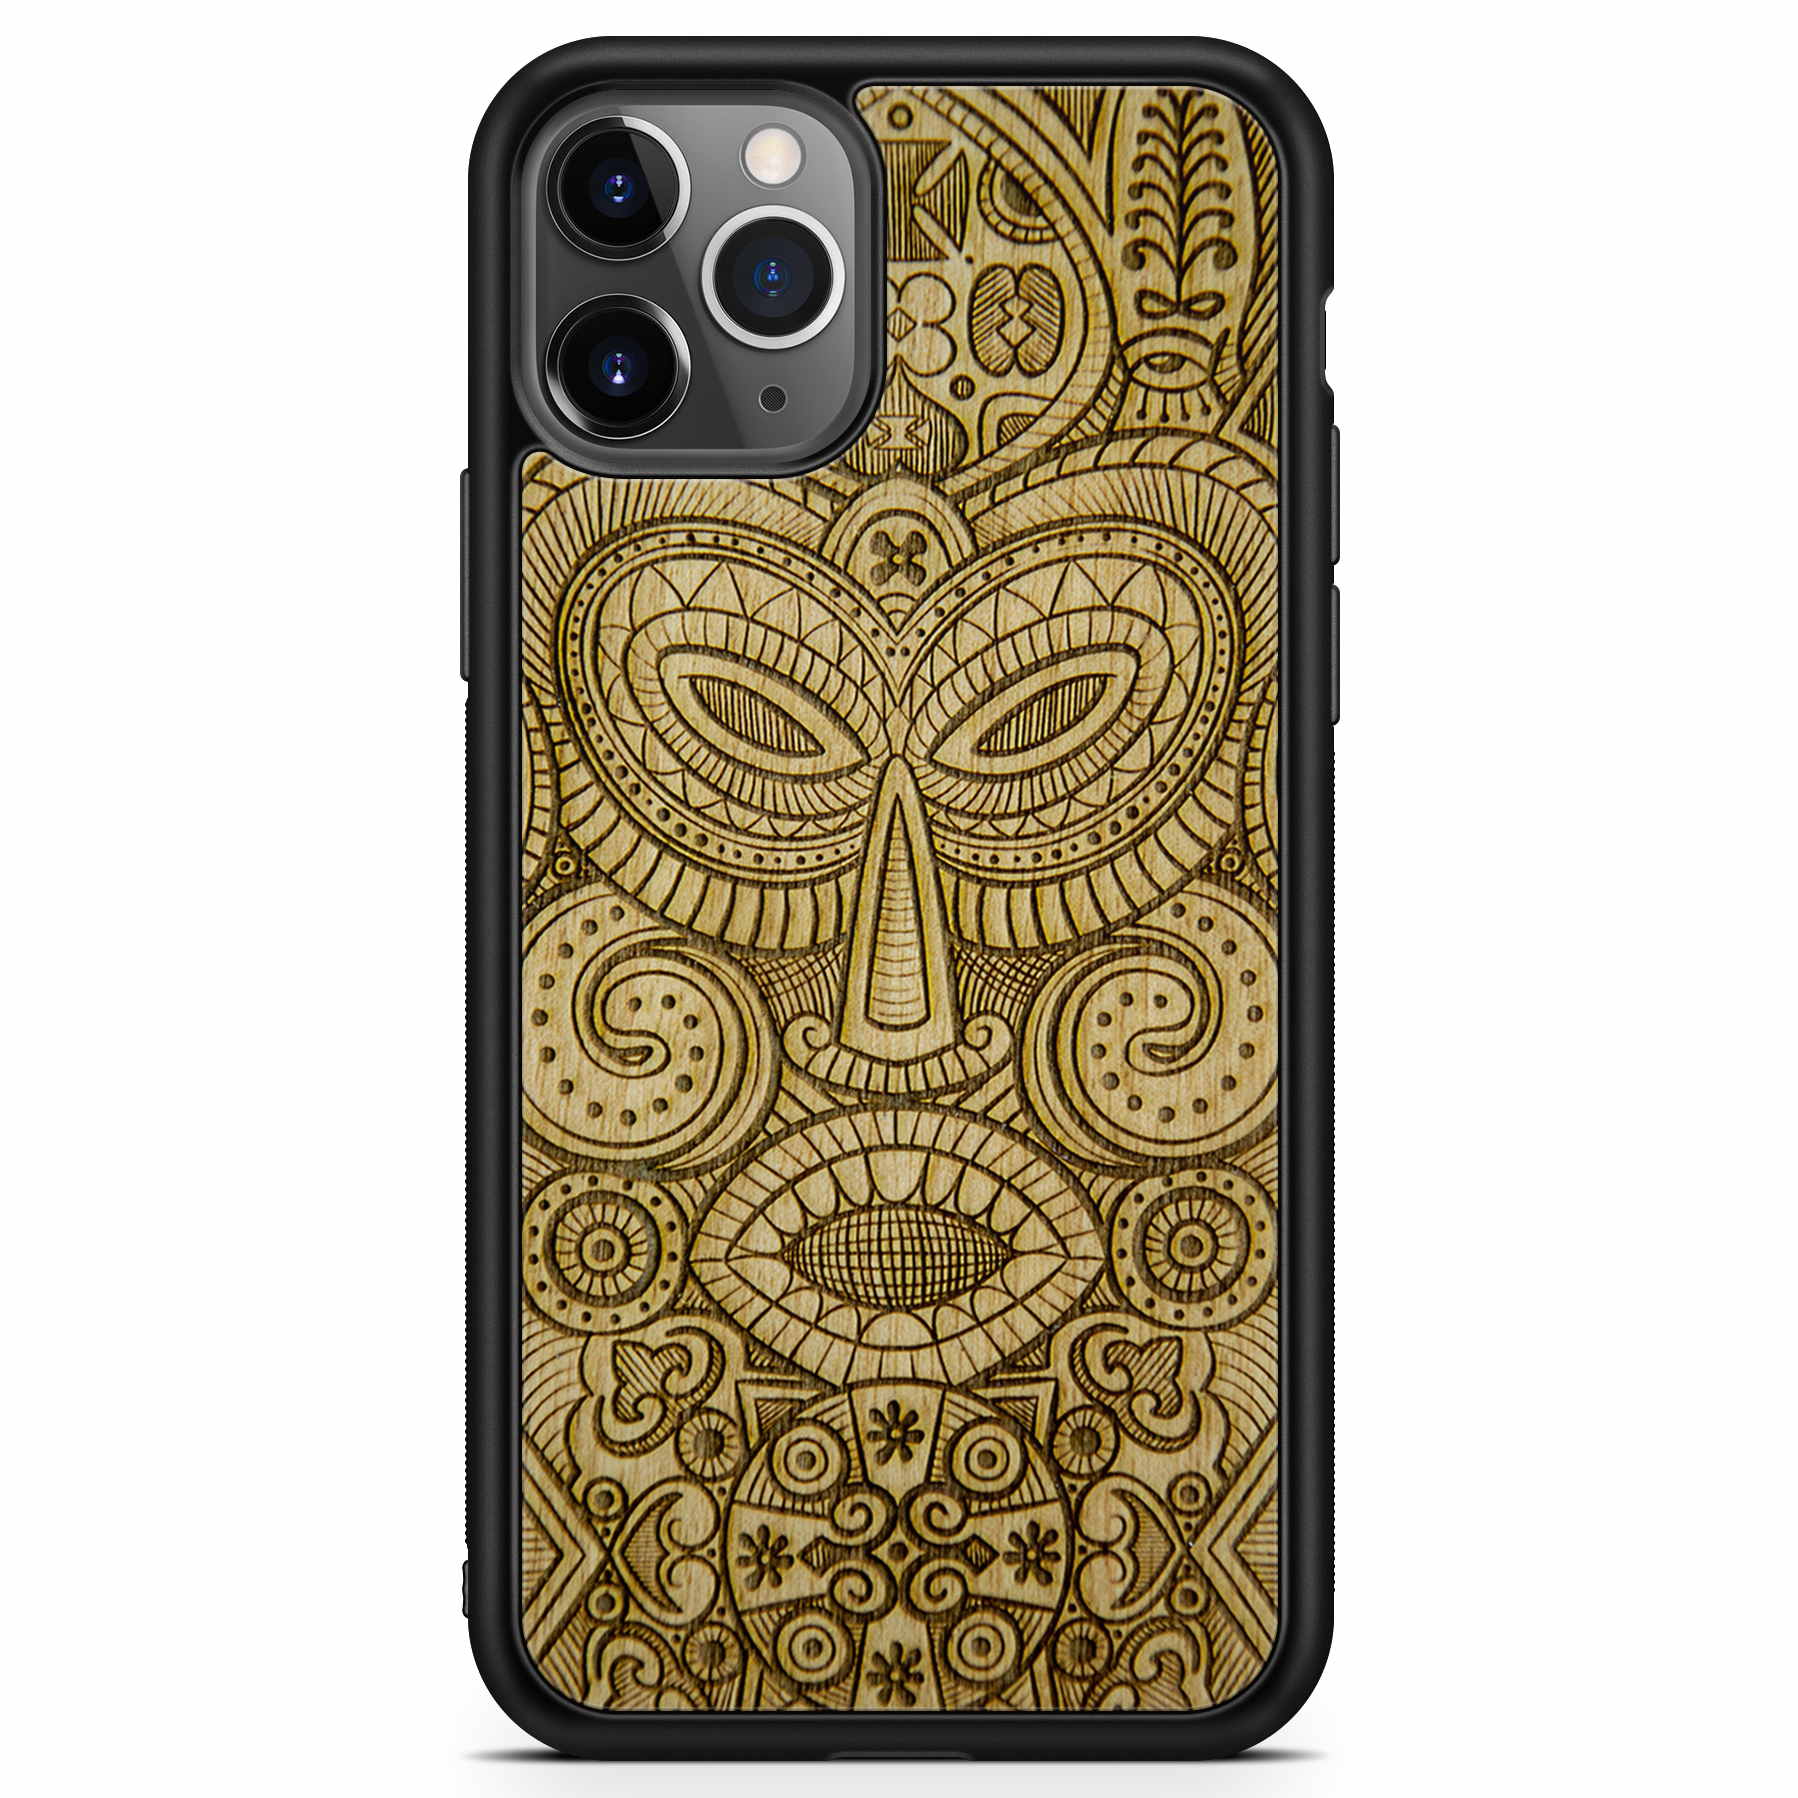 Custodia per telefono in legno con maschera tribale per iPhone 11 Pro Max